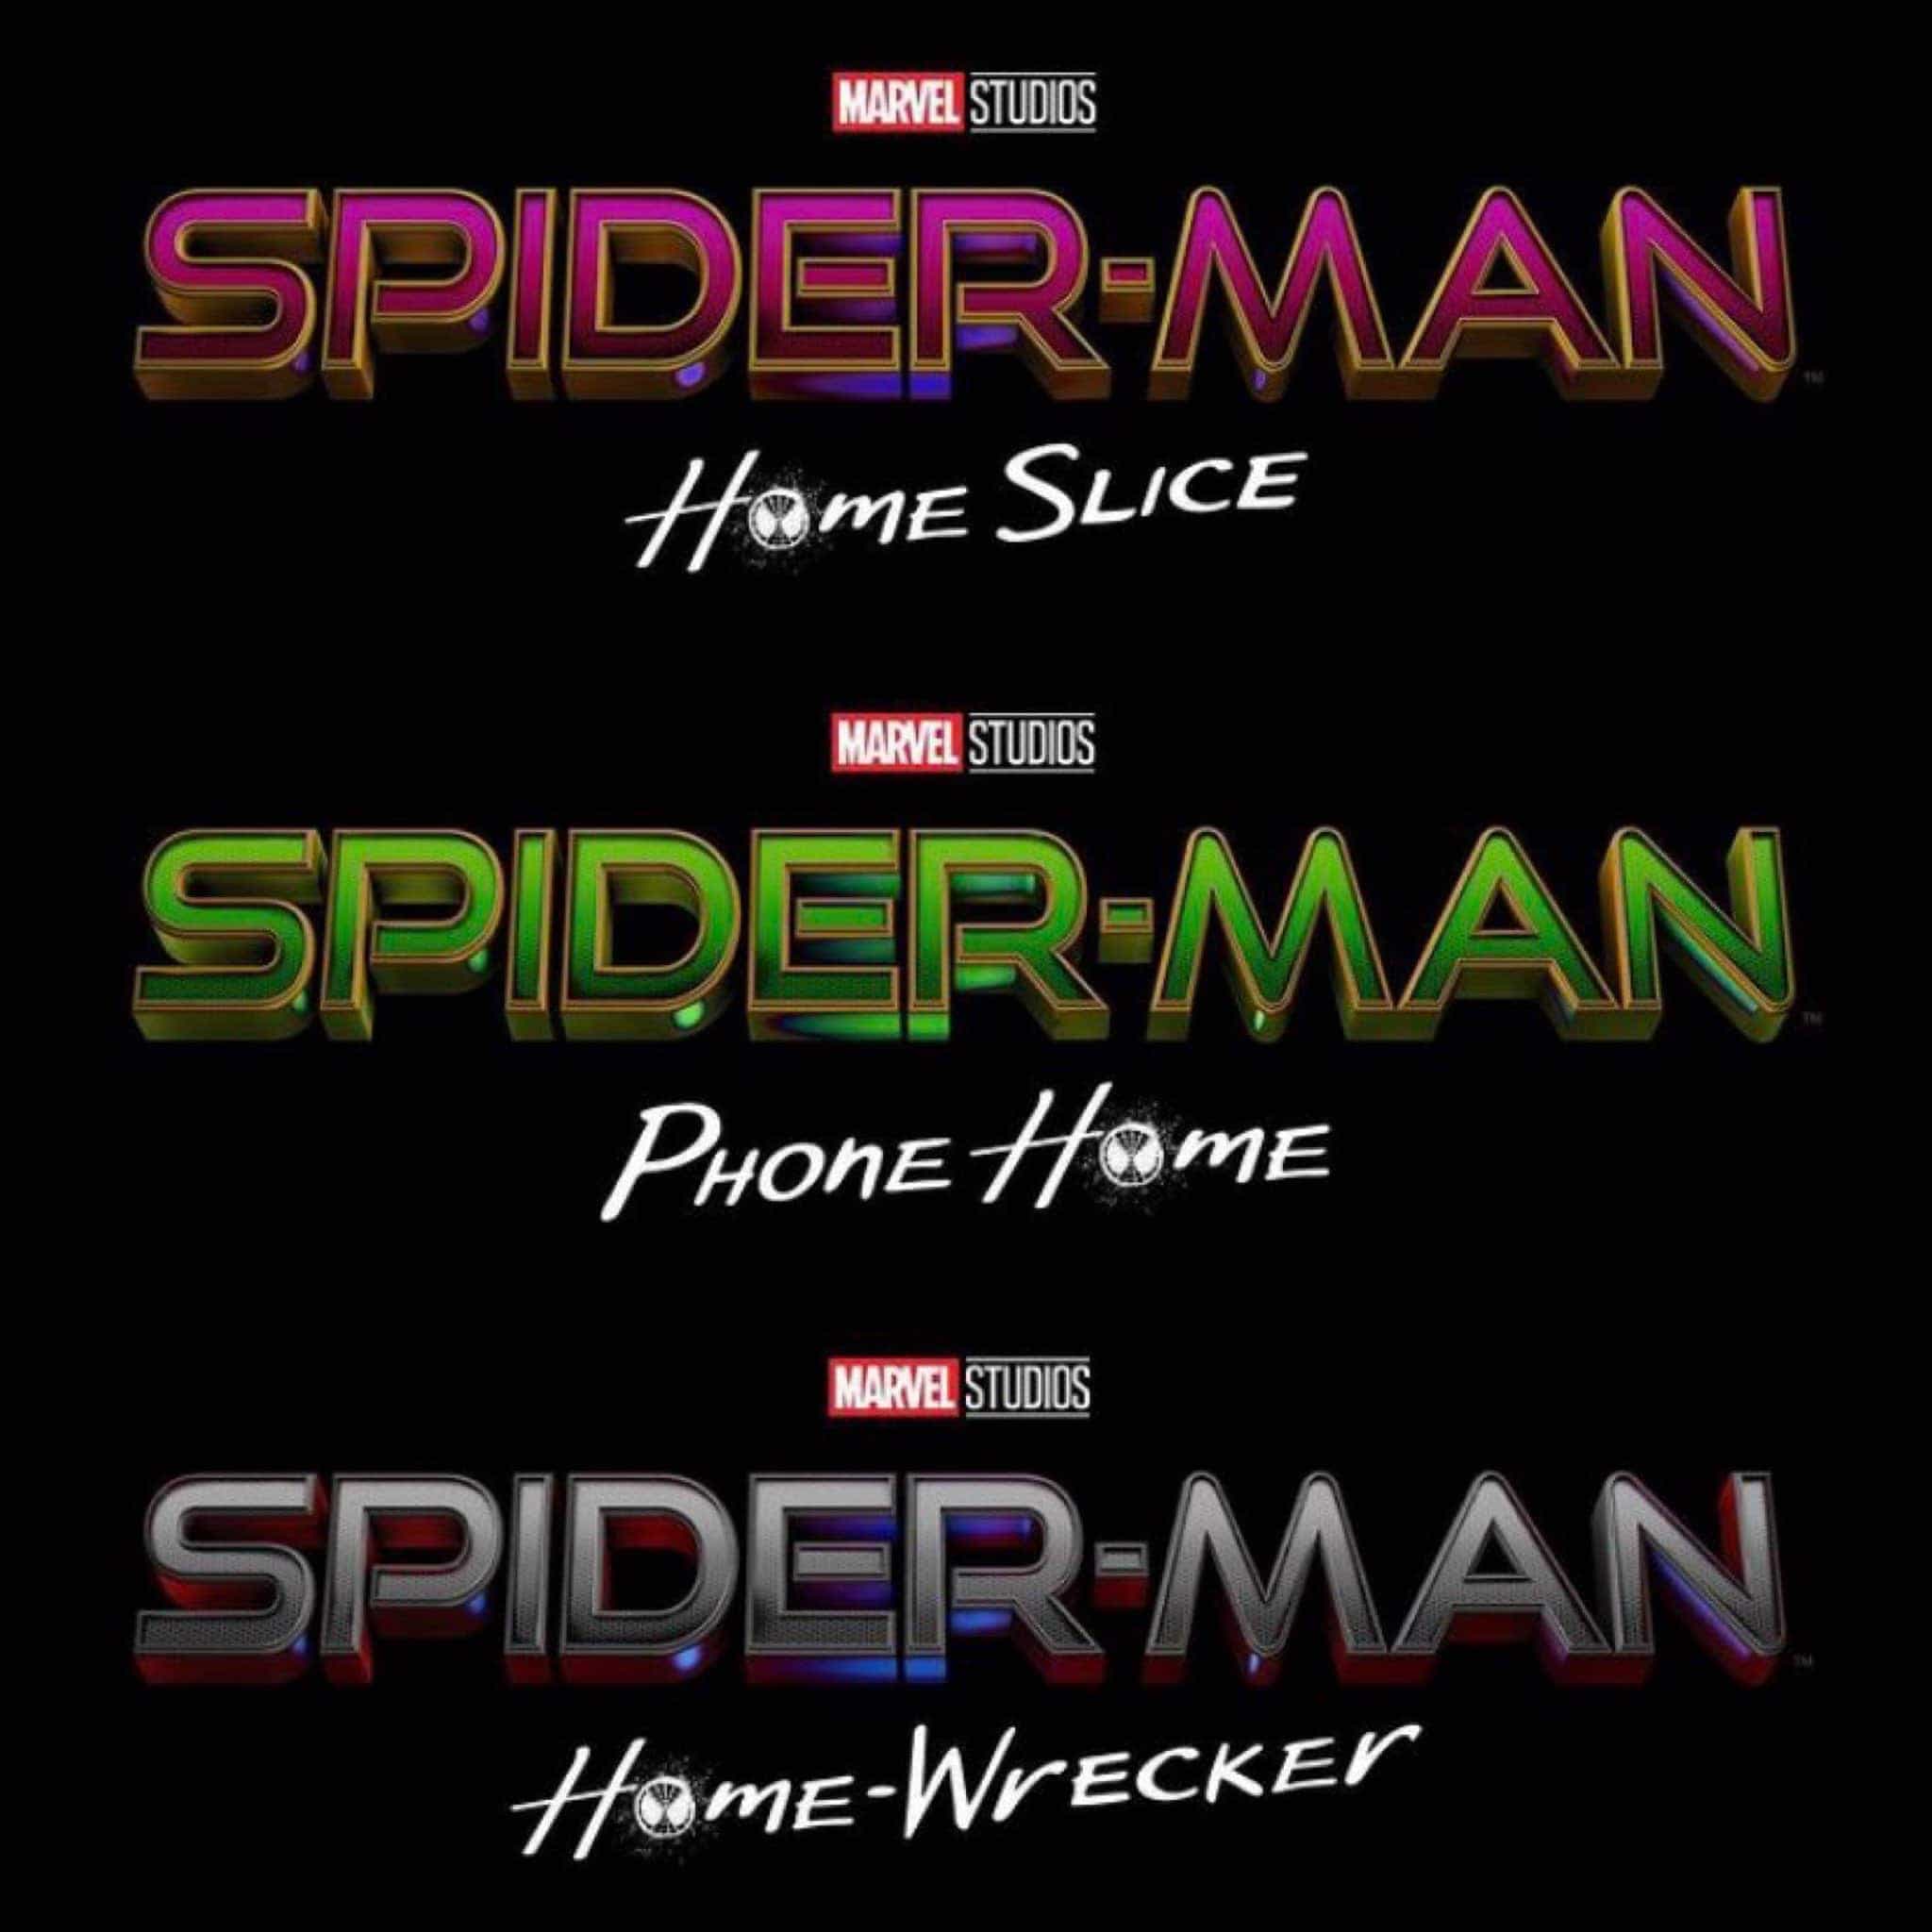 Spider-Man teaser titles